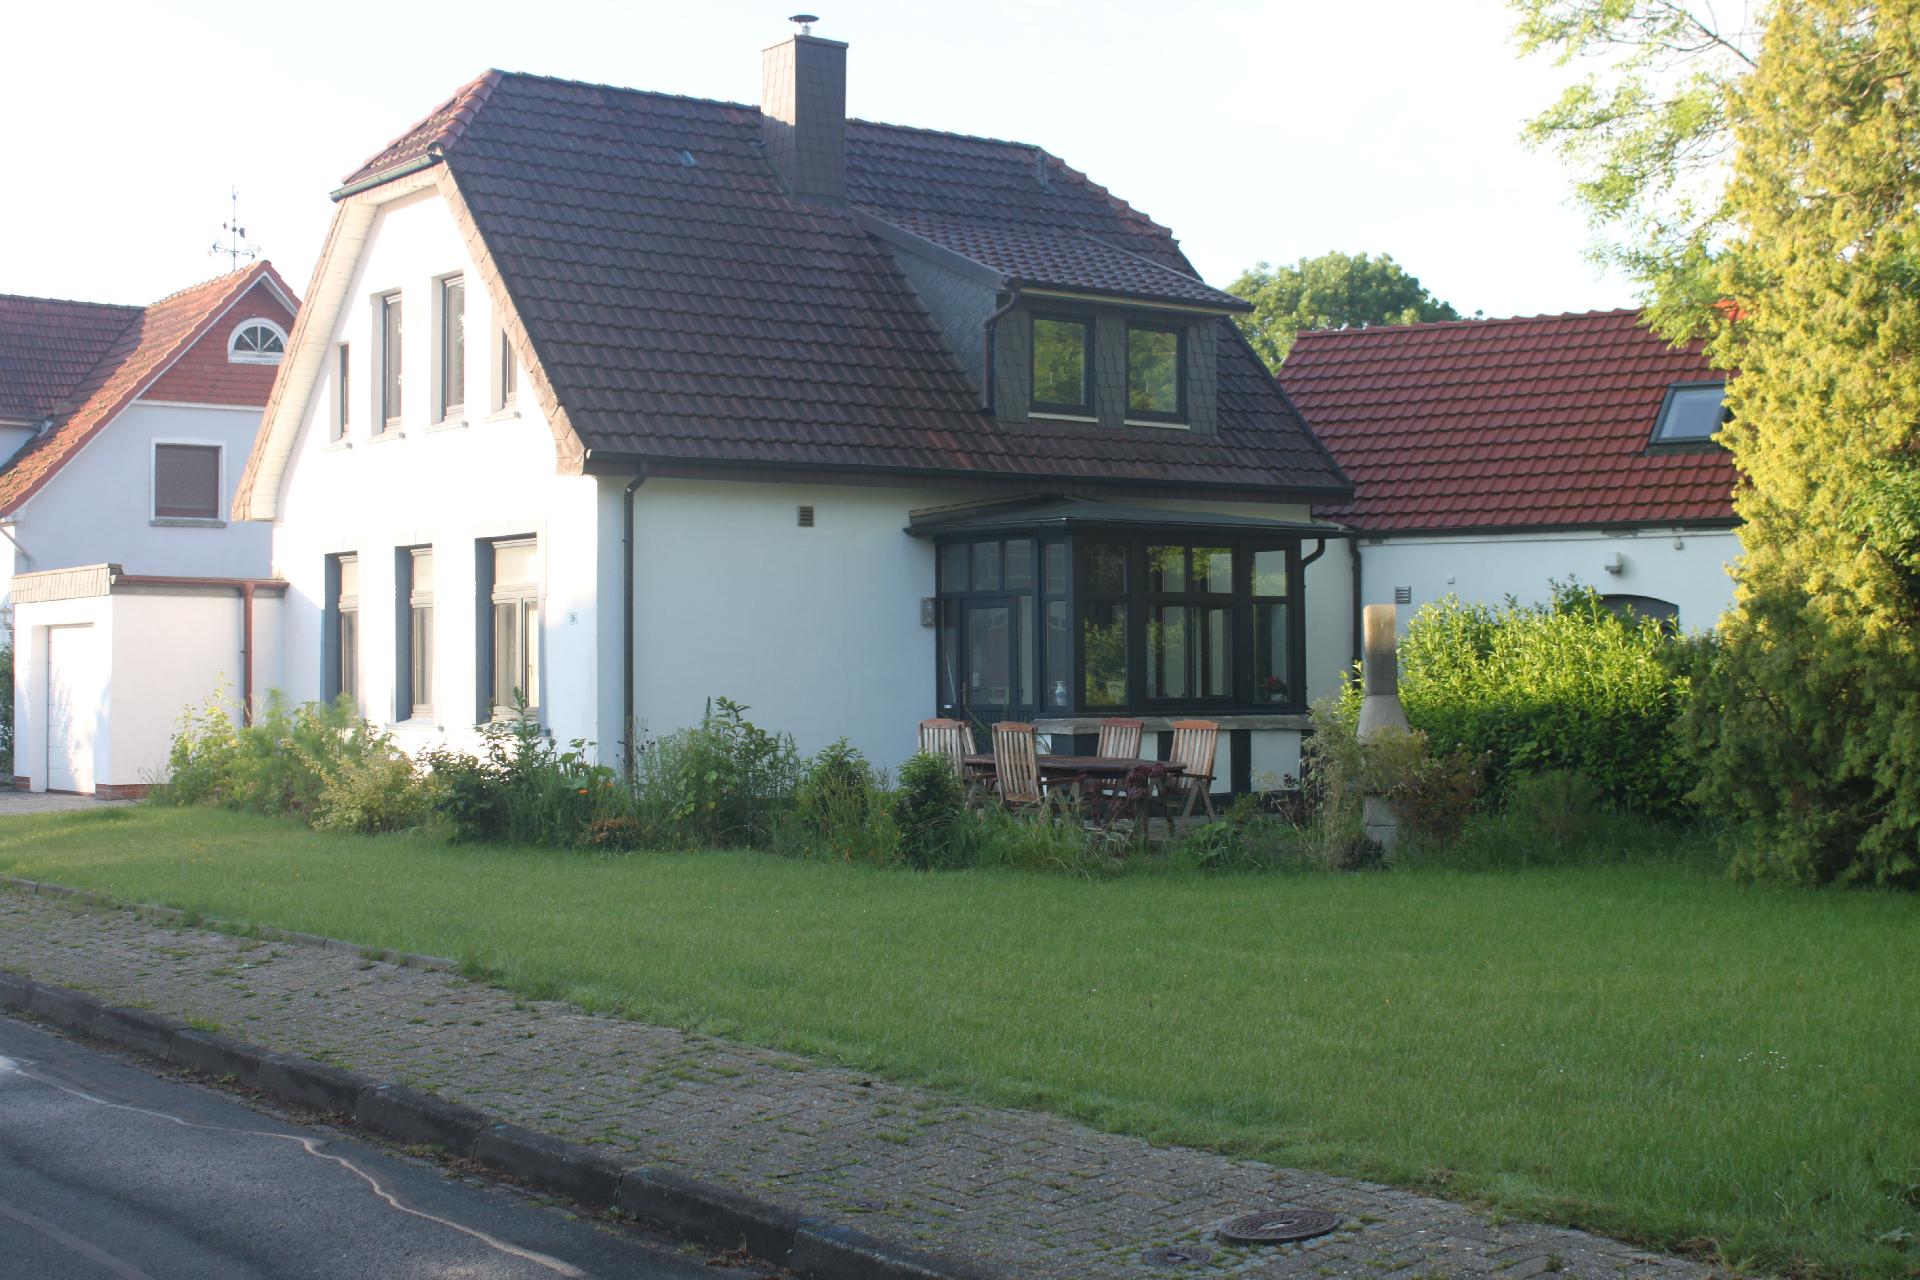 Küsterhaus Ferienhaus in Deutschland